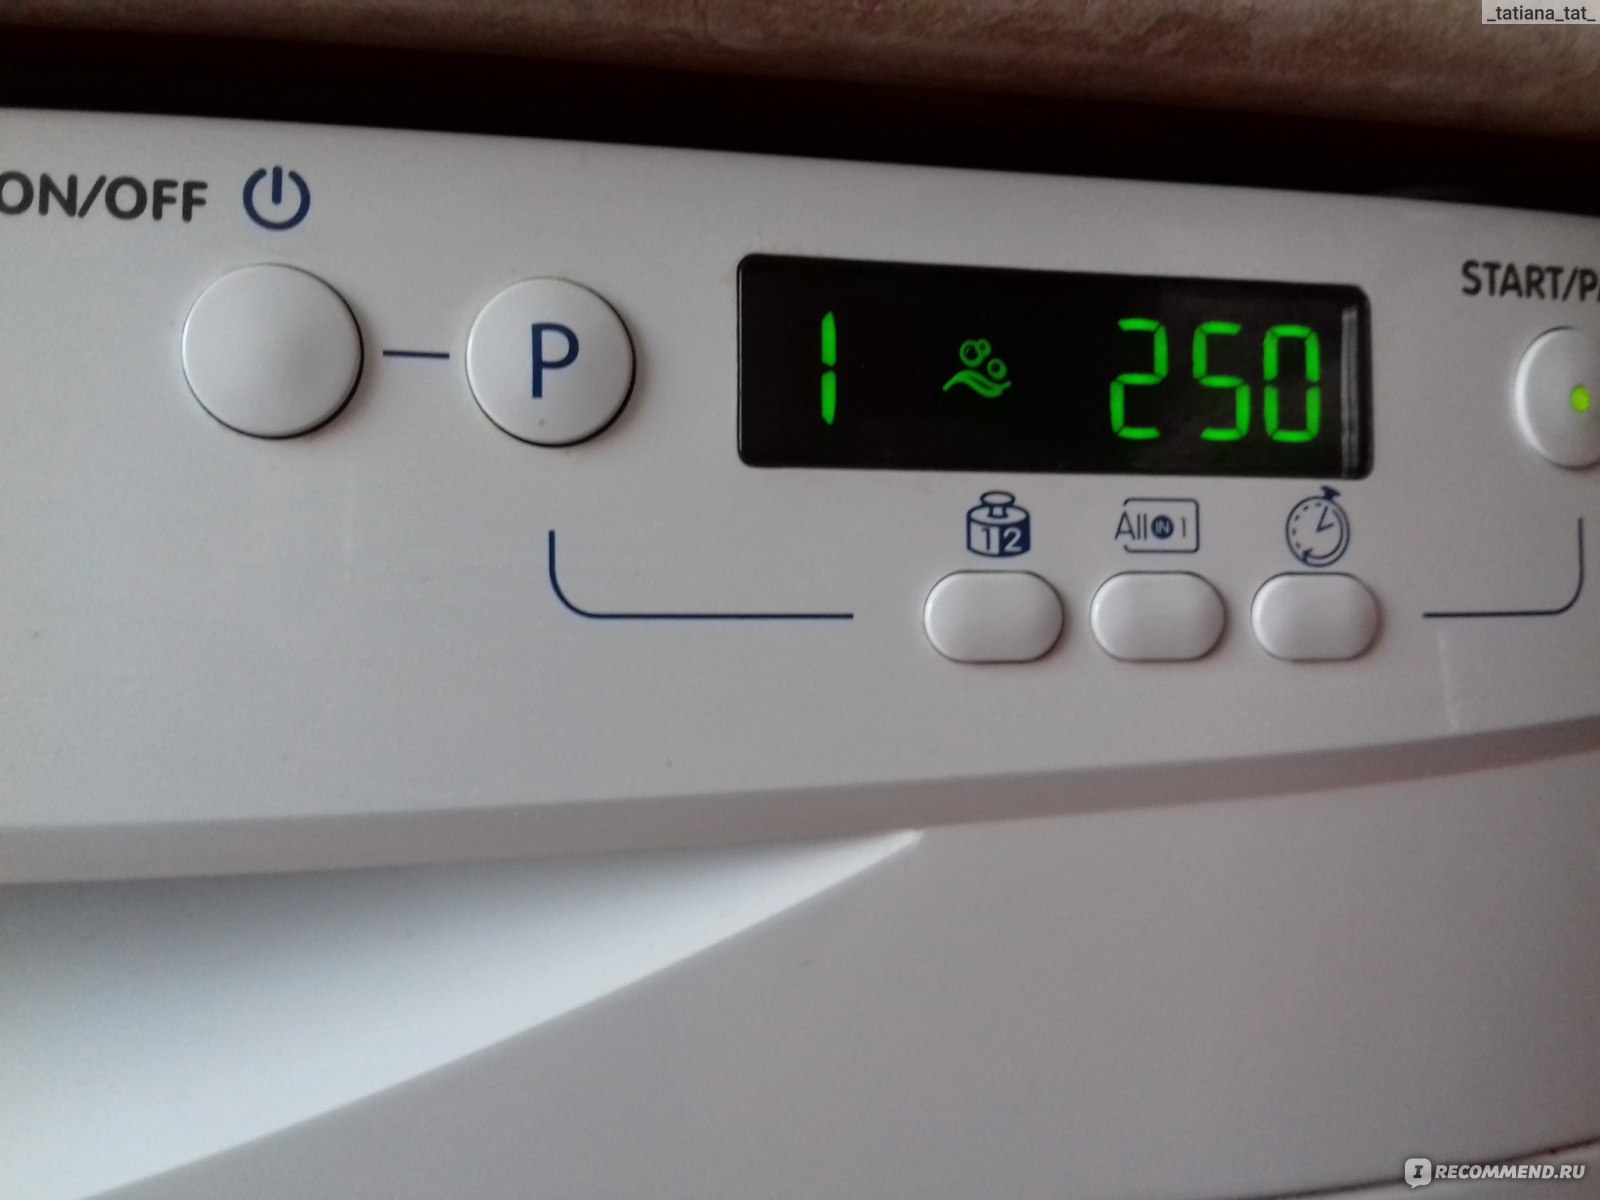 Посудомойка индезит ошибки. Индезит посудомойка 6 индикатор. Индикаторы на посудомоечной машине Индезит. Посудомоечная машина Индезит 5737 табло.